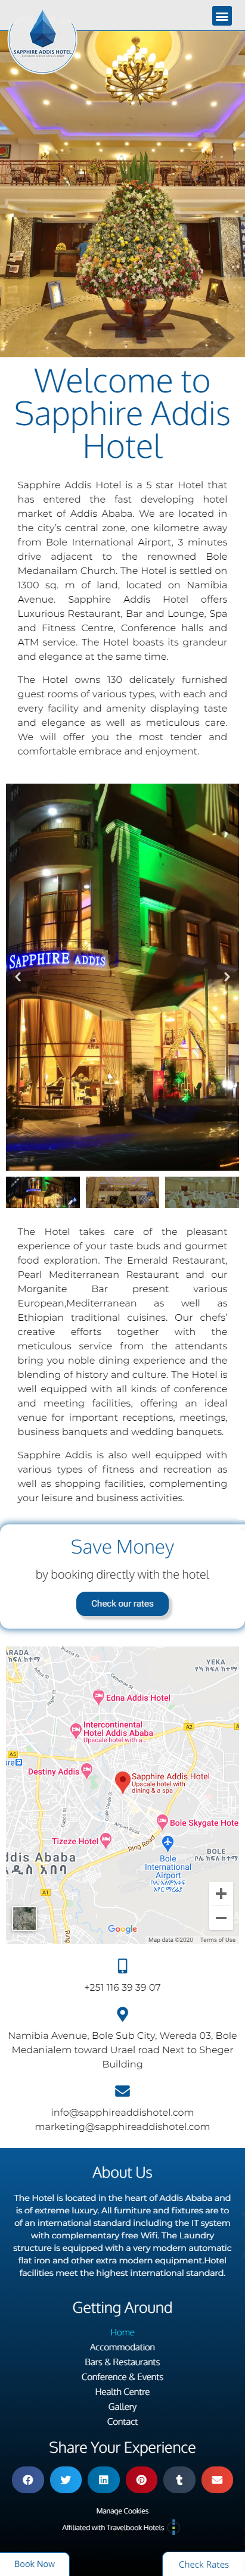 Mobile design for Sapphire Addis Hotel